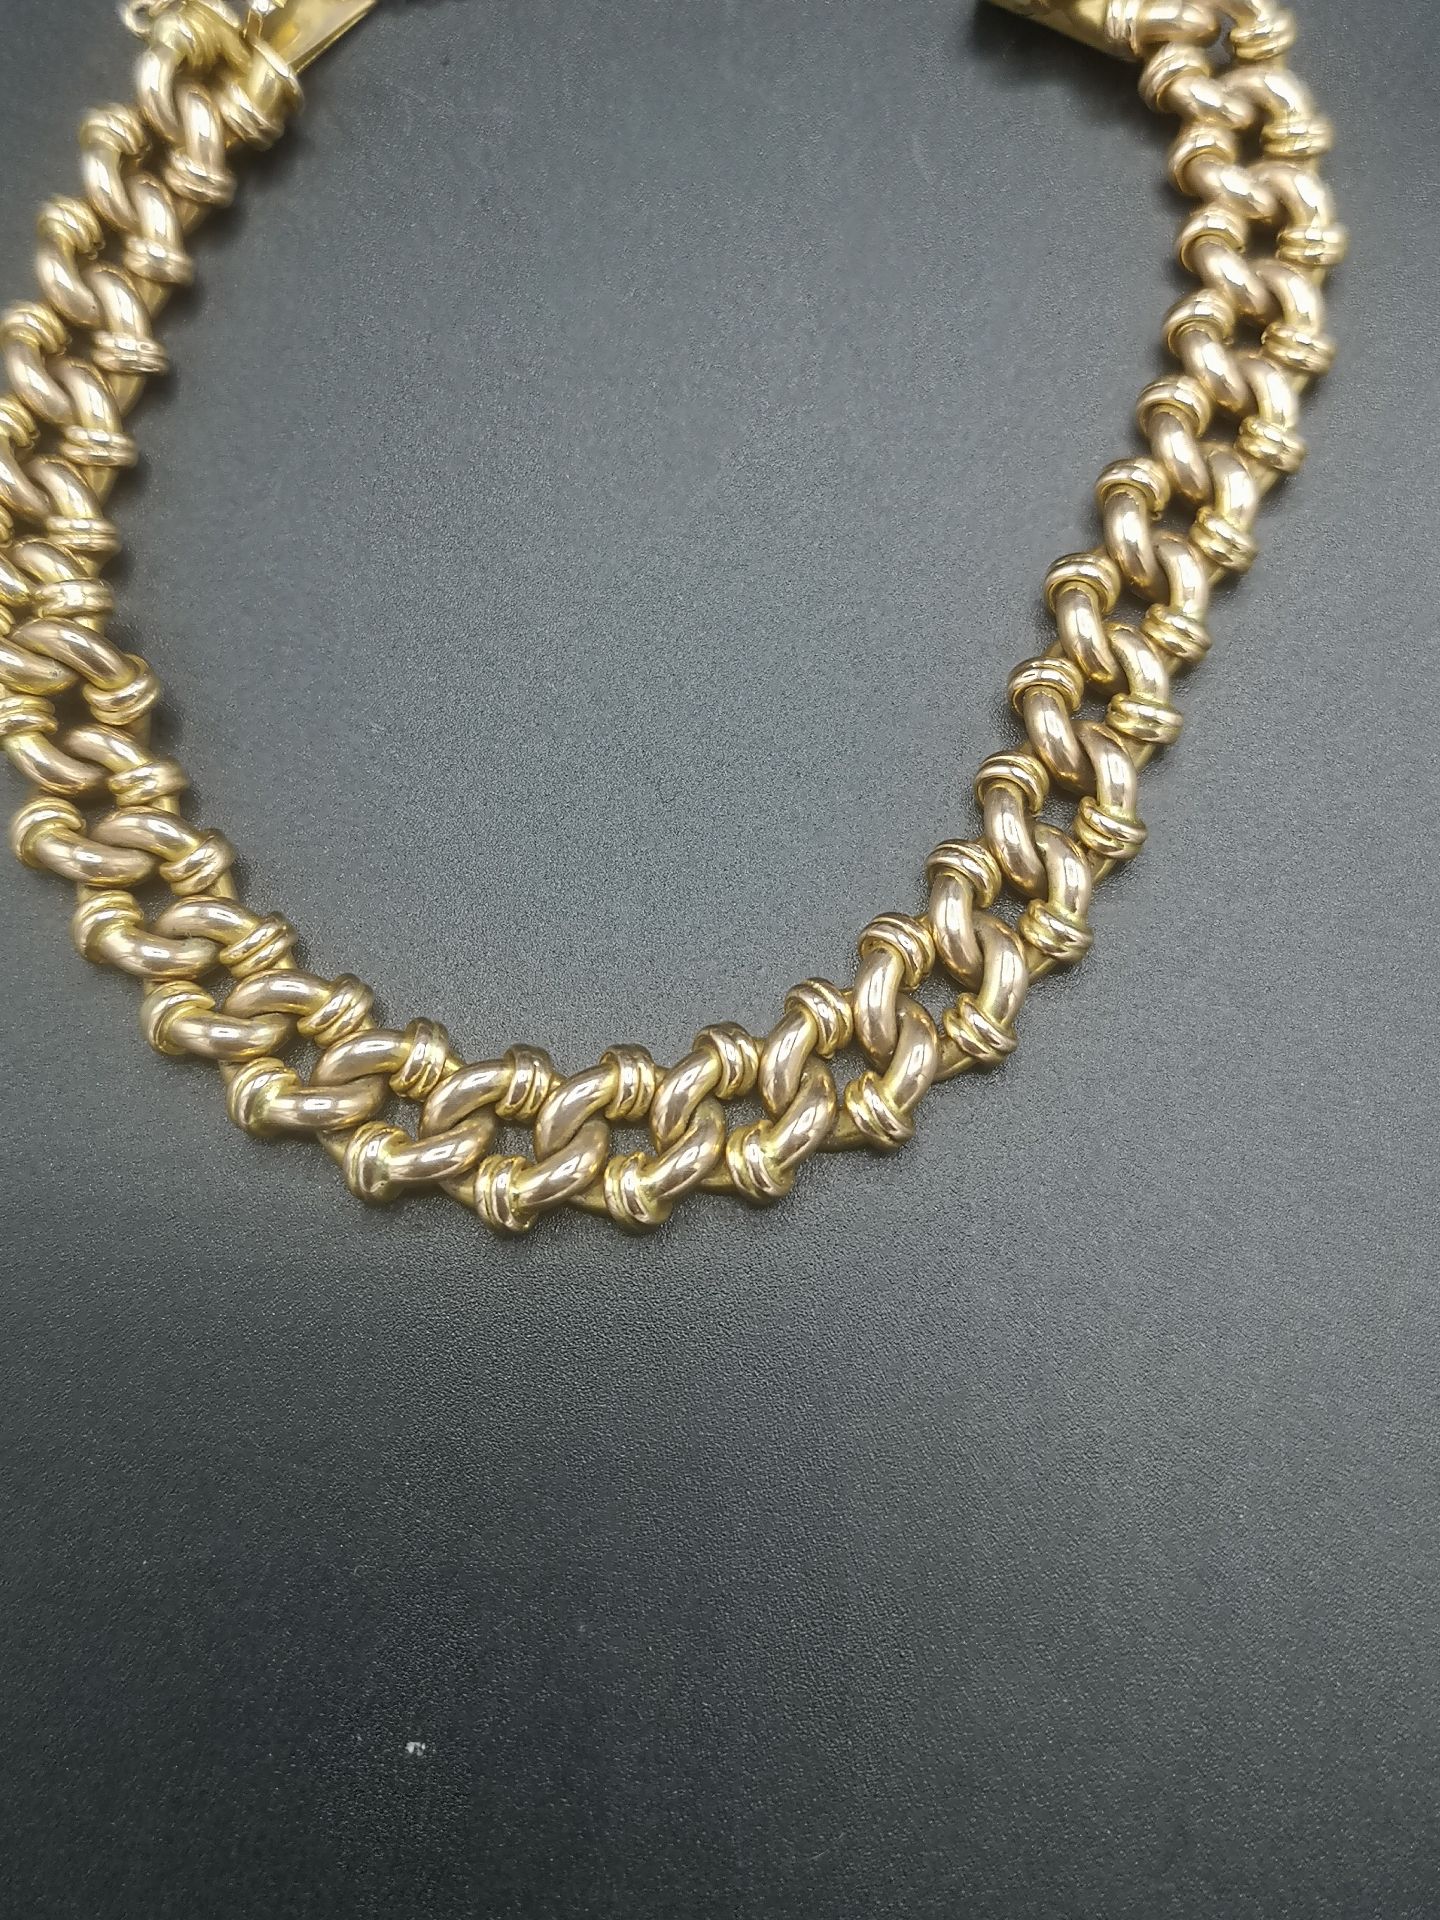 9ct gold link bracelet - Image 3 of 5